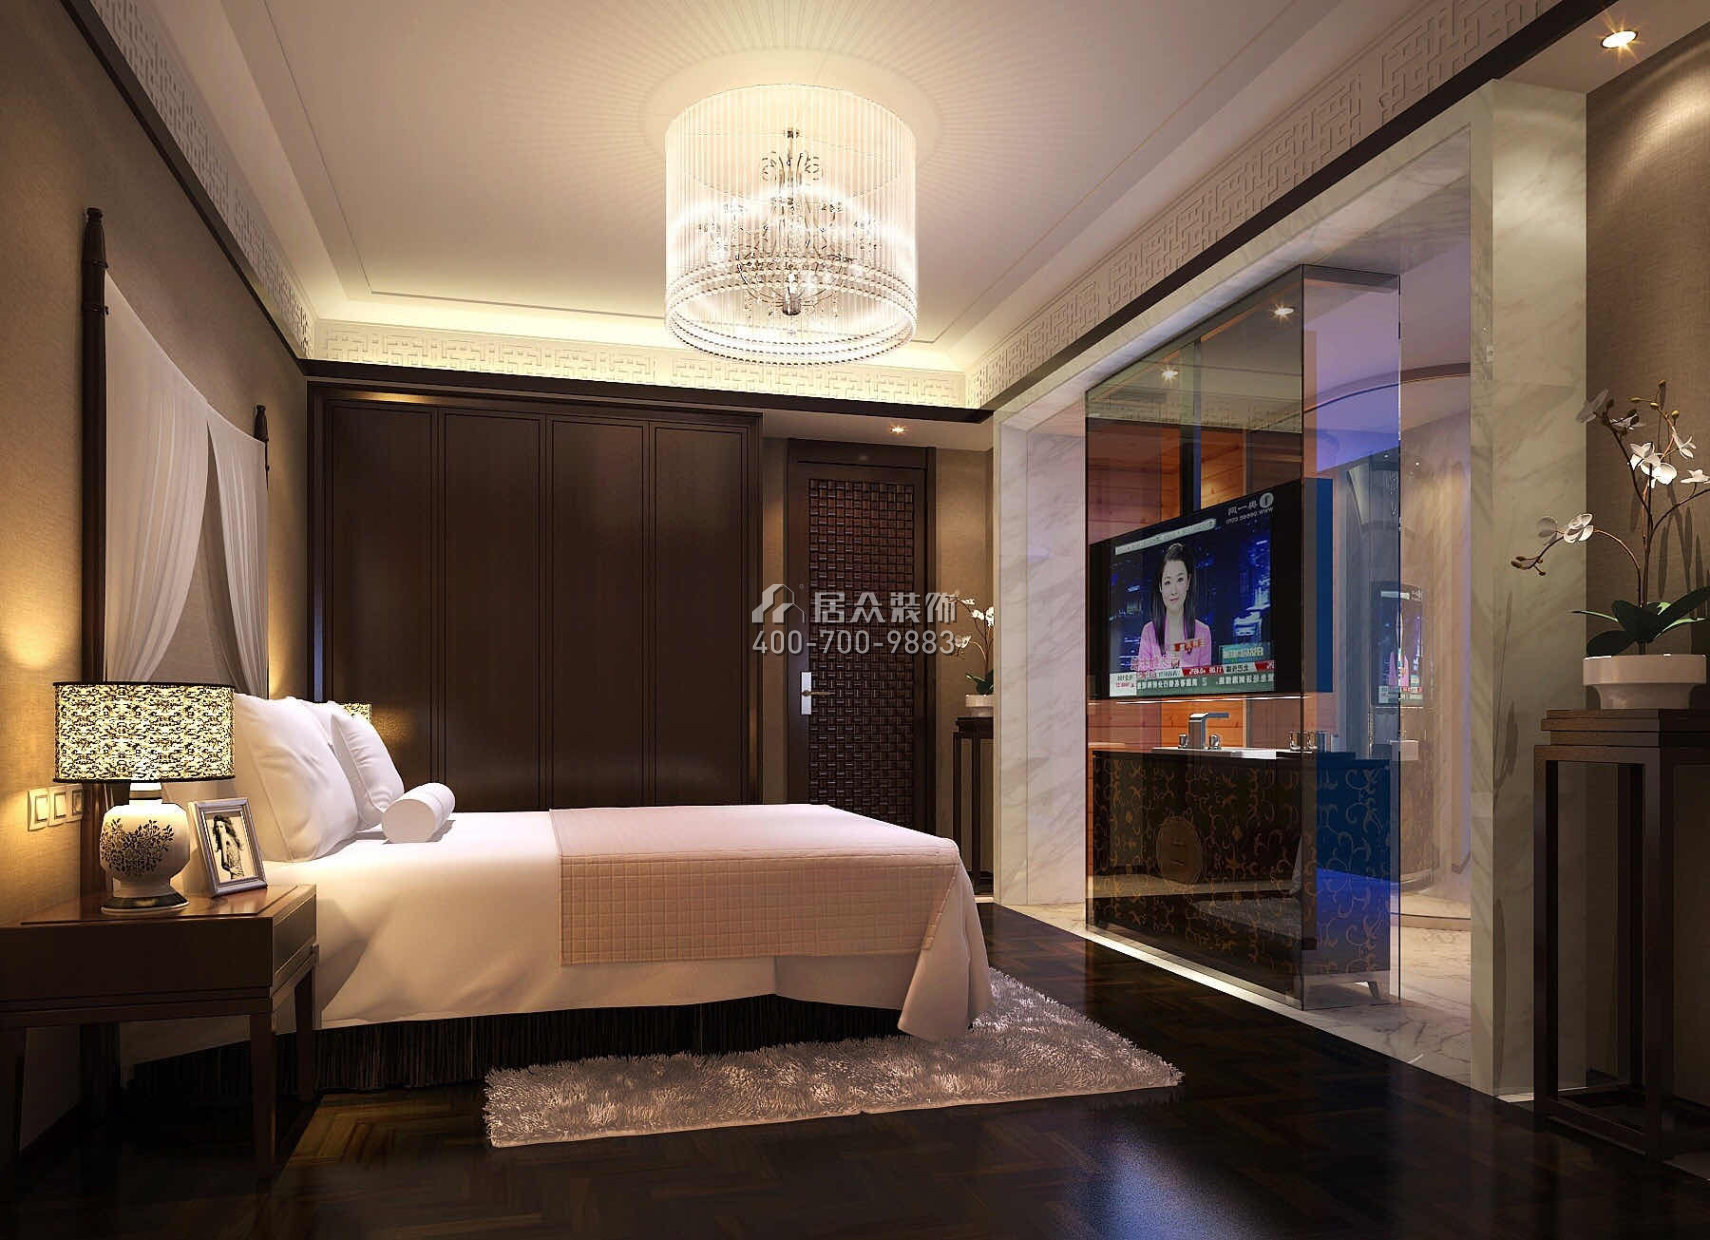 翠岭华庭120平方米中式风格平层户型卧室装修效果图